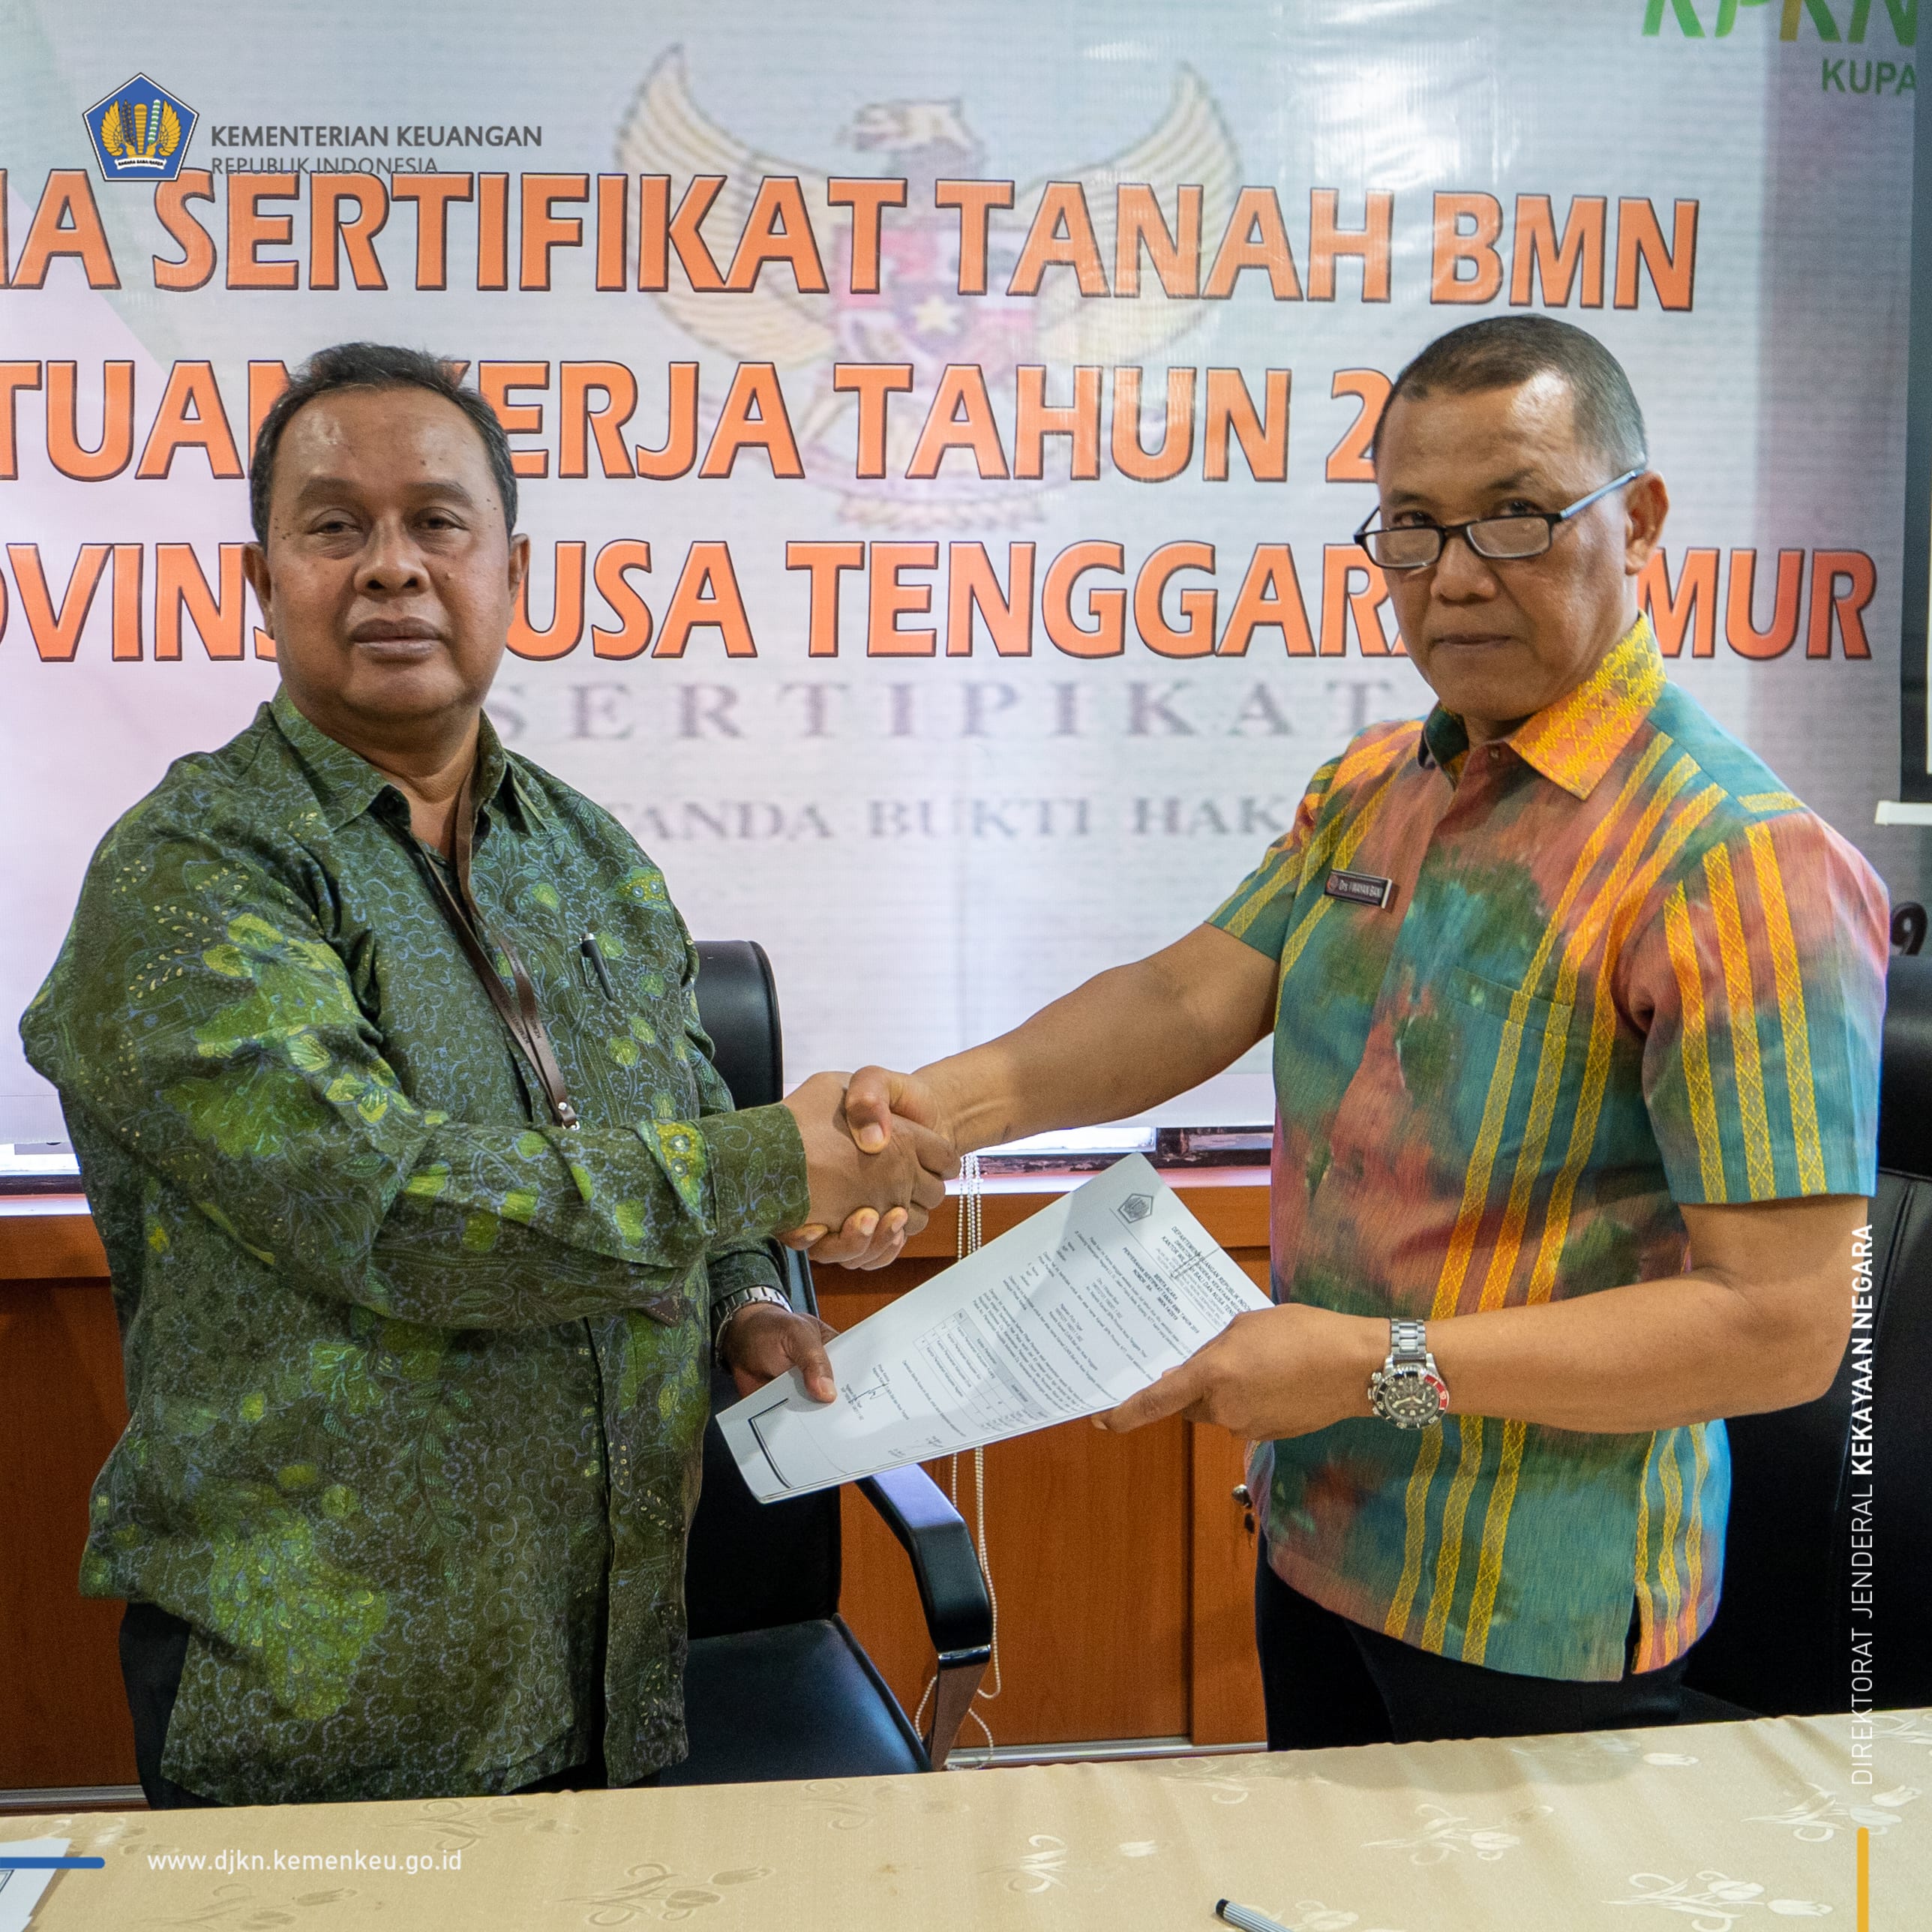 340 Bidang Tanah BMN di Nusa Tenggara Timur Ditargetkan Sertifikasi Tahun 2020